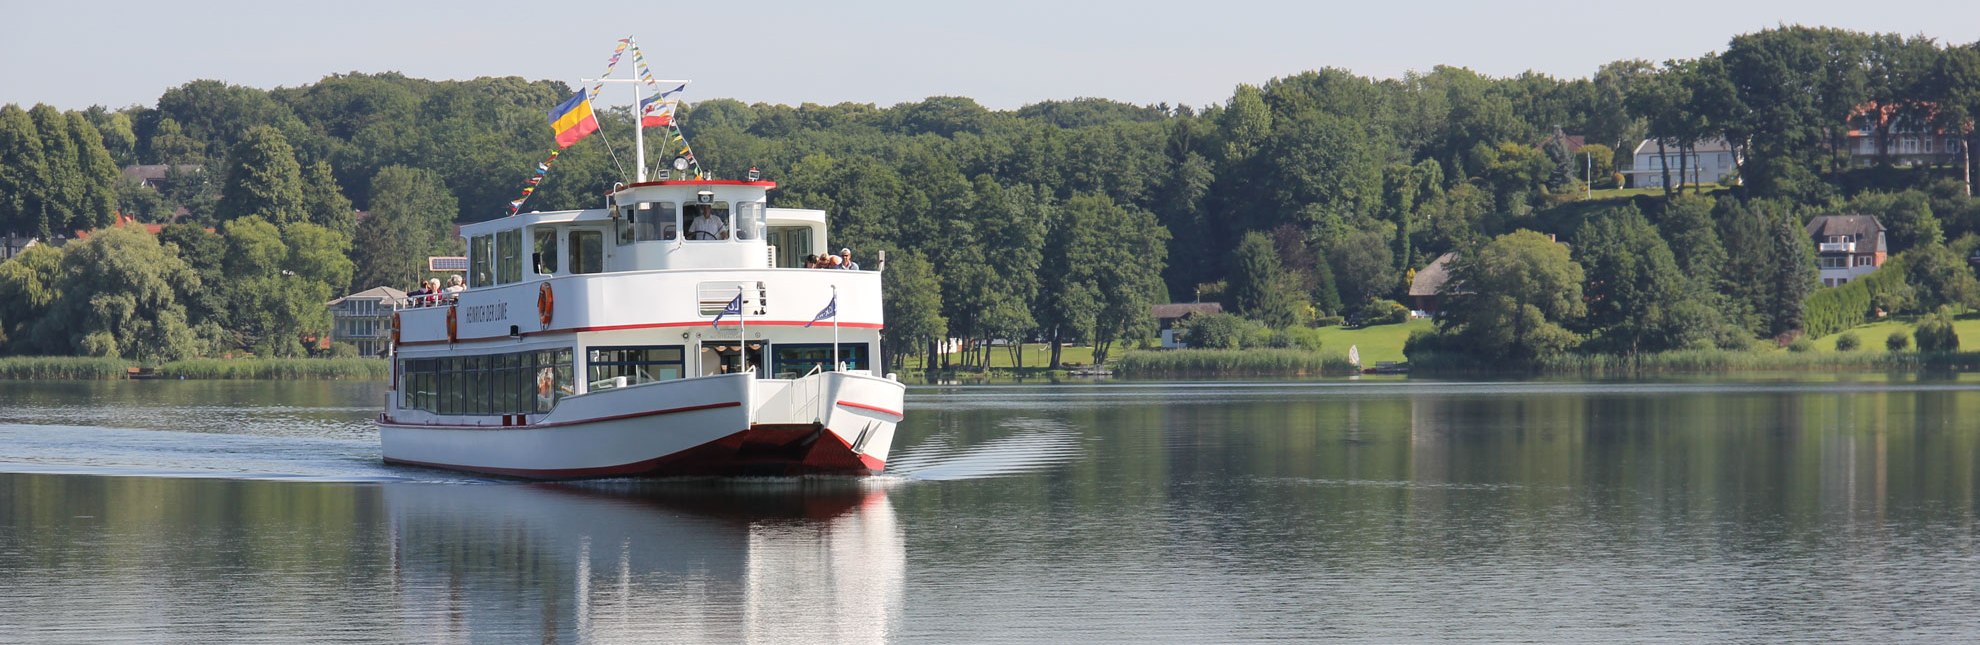 Die Schifffahrtslinie Ratzeburger See unterwegs auf dem Domsee, © Carina Jahnke/HLMS